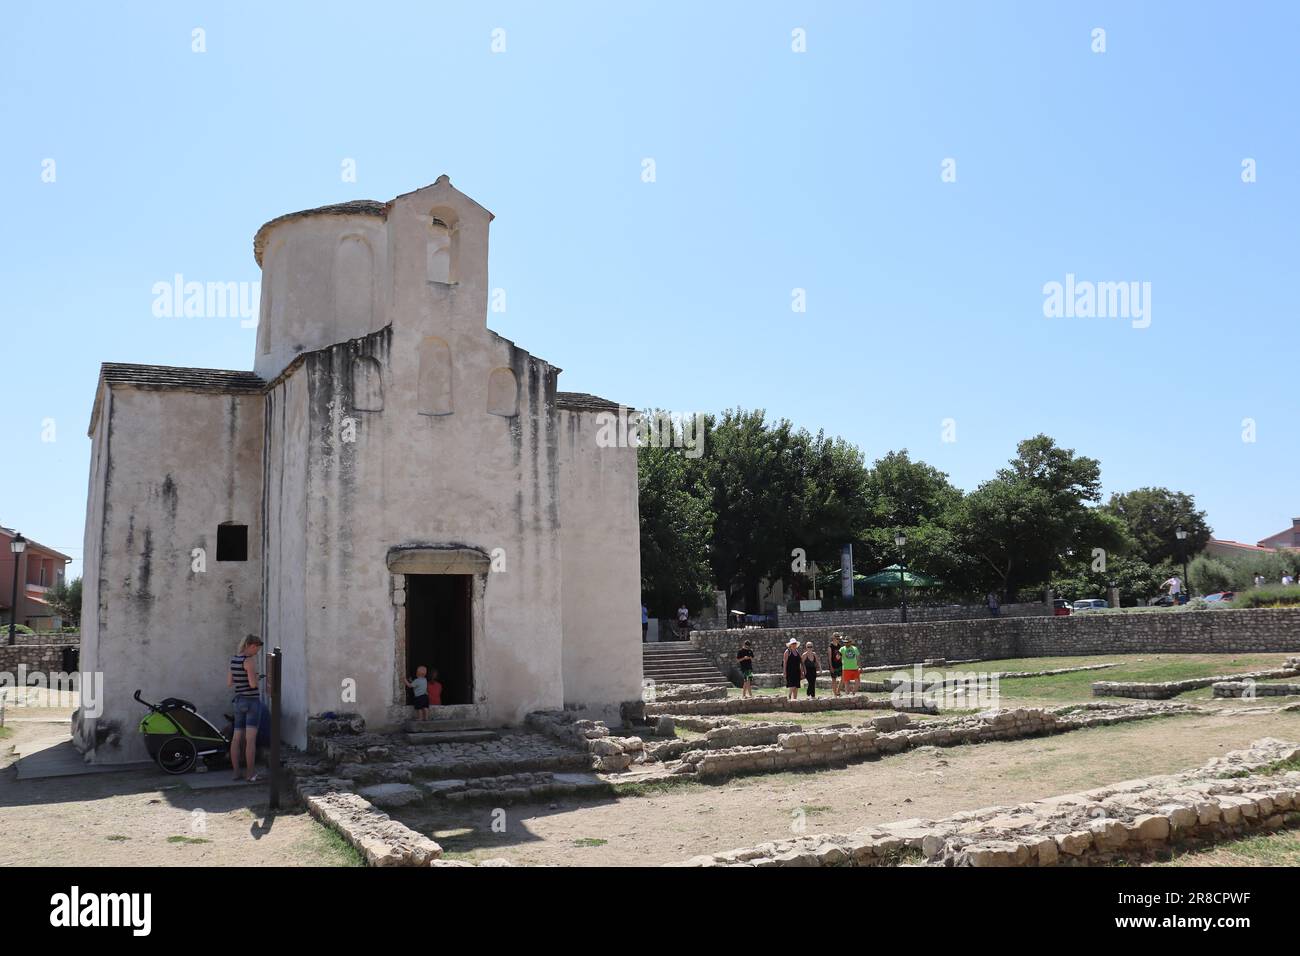 Nin è una città della Croazia. La prima città reale croata. La Chiesa di St. Anselma e Chiesa di San La croce insieme ai monumenti sono mostrati nel pho. Foto Stock